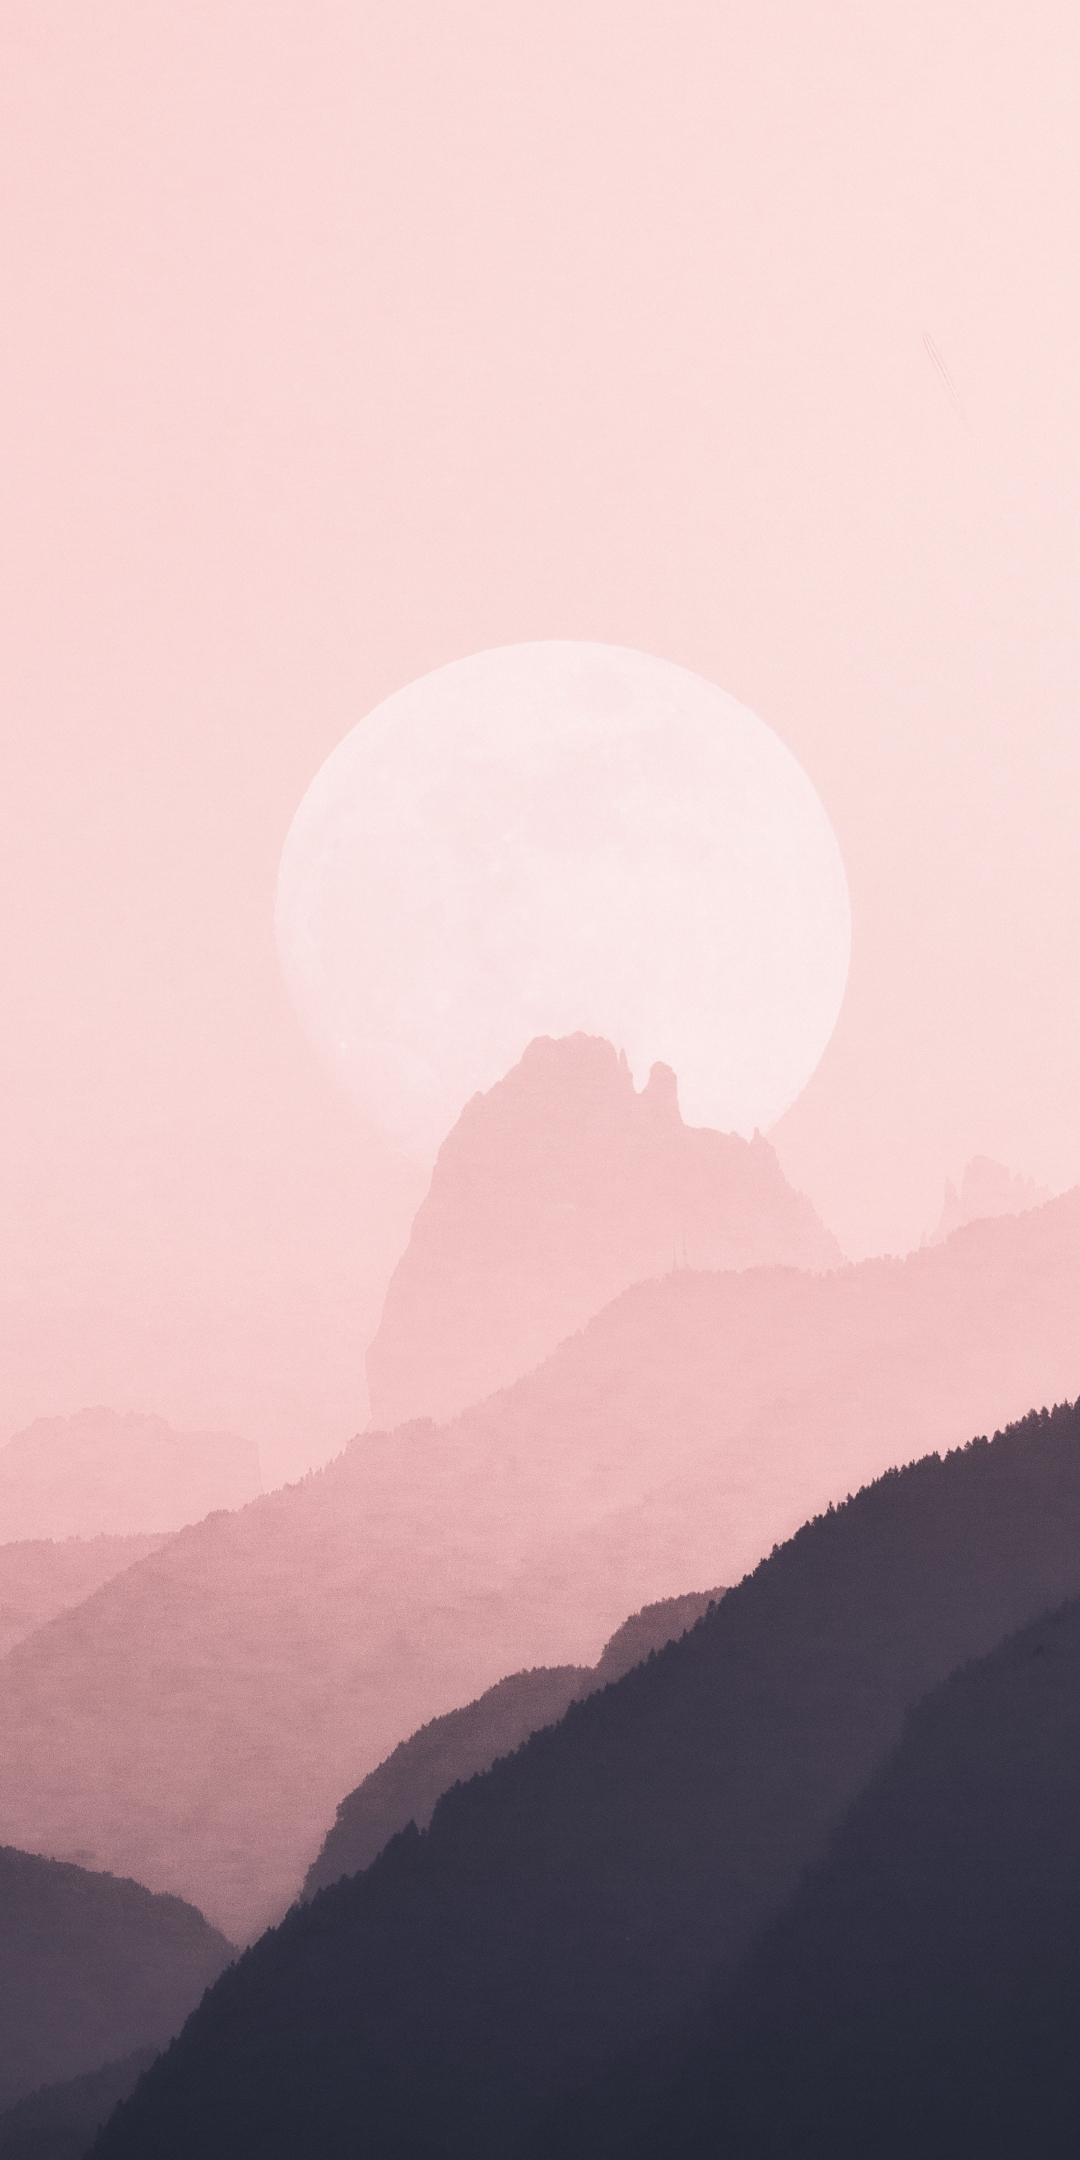 Minimal, horizon, nature, mountains, silhouette, 1080x2160 wallpaper